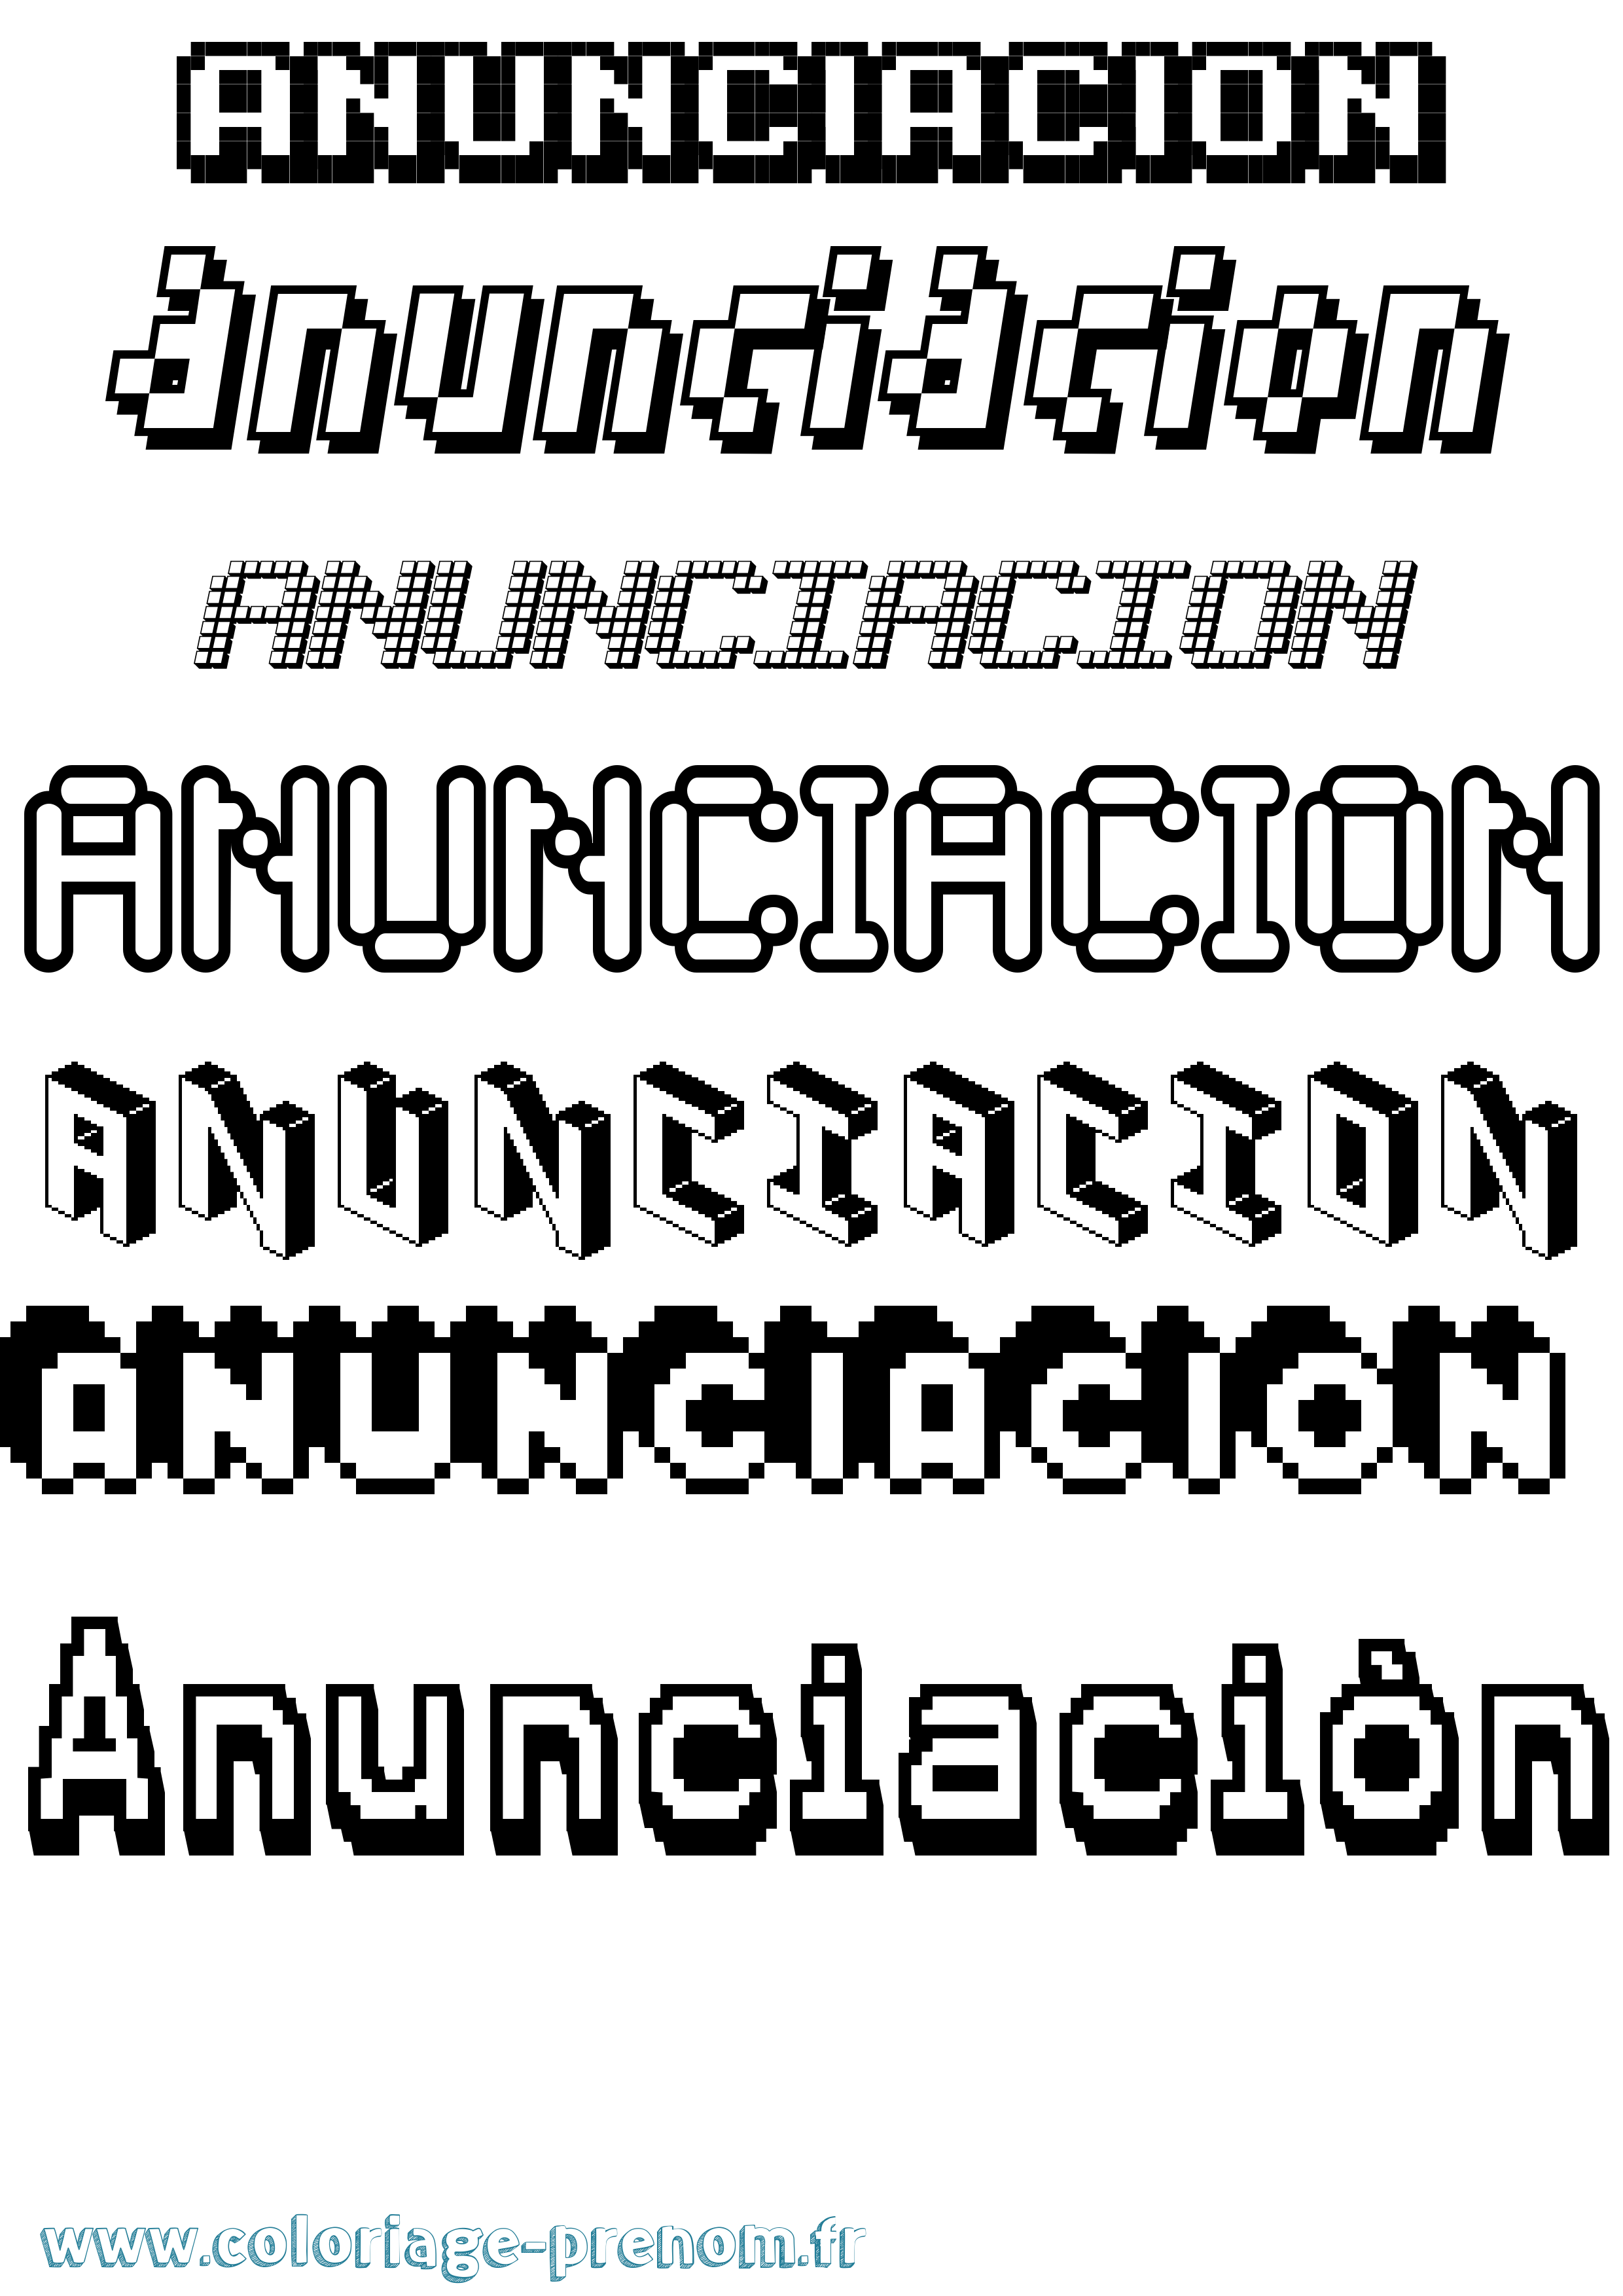 Coloriage prénom Anunciación Pixel